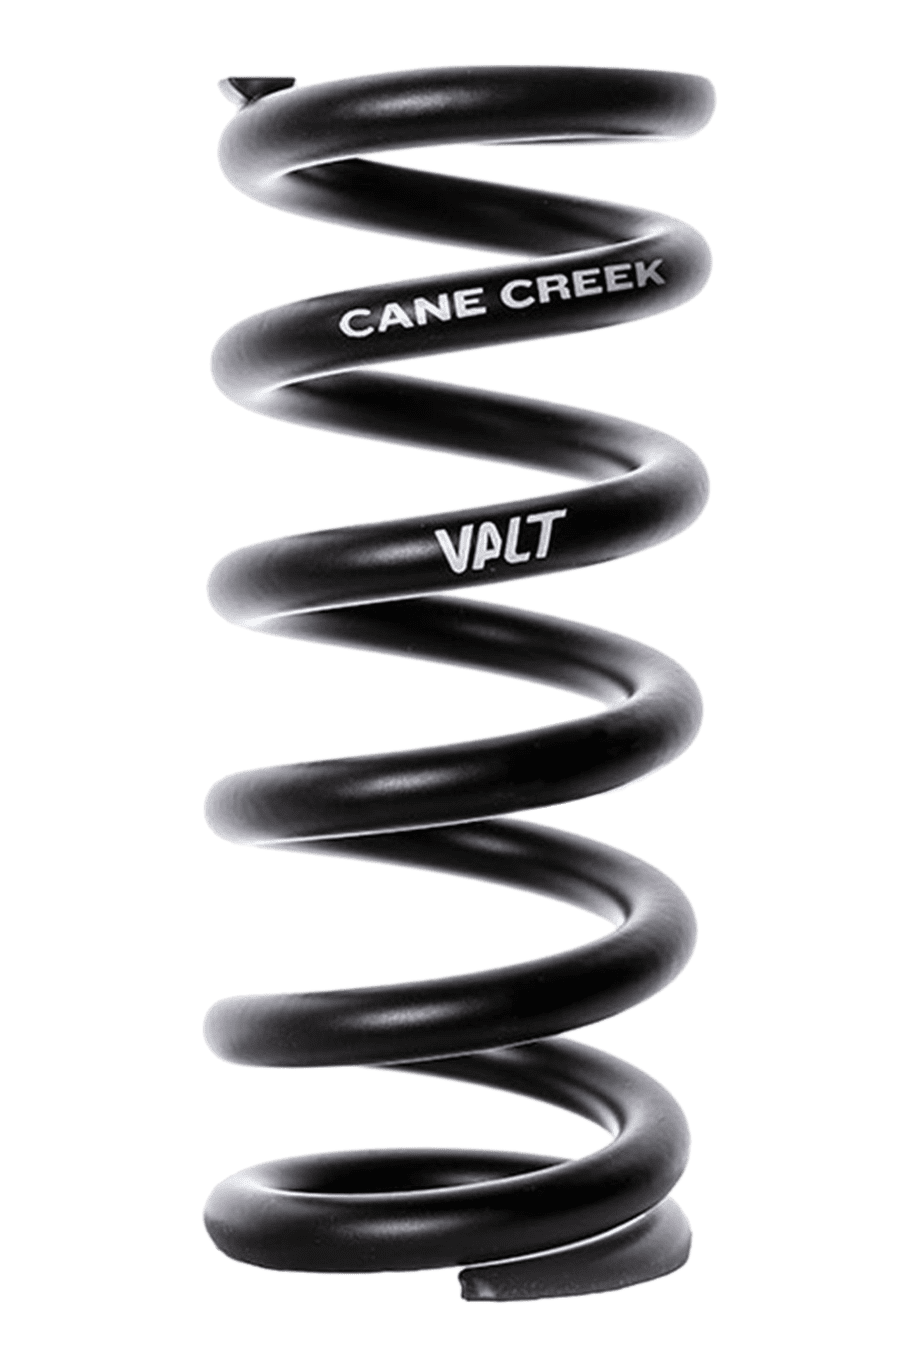 Black Cane Creek Valt lightweight coil shock spring